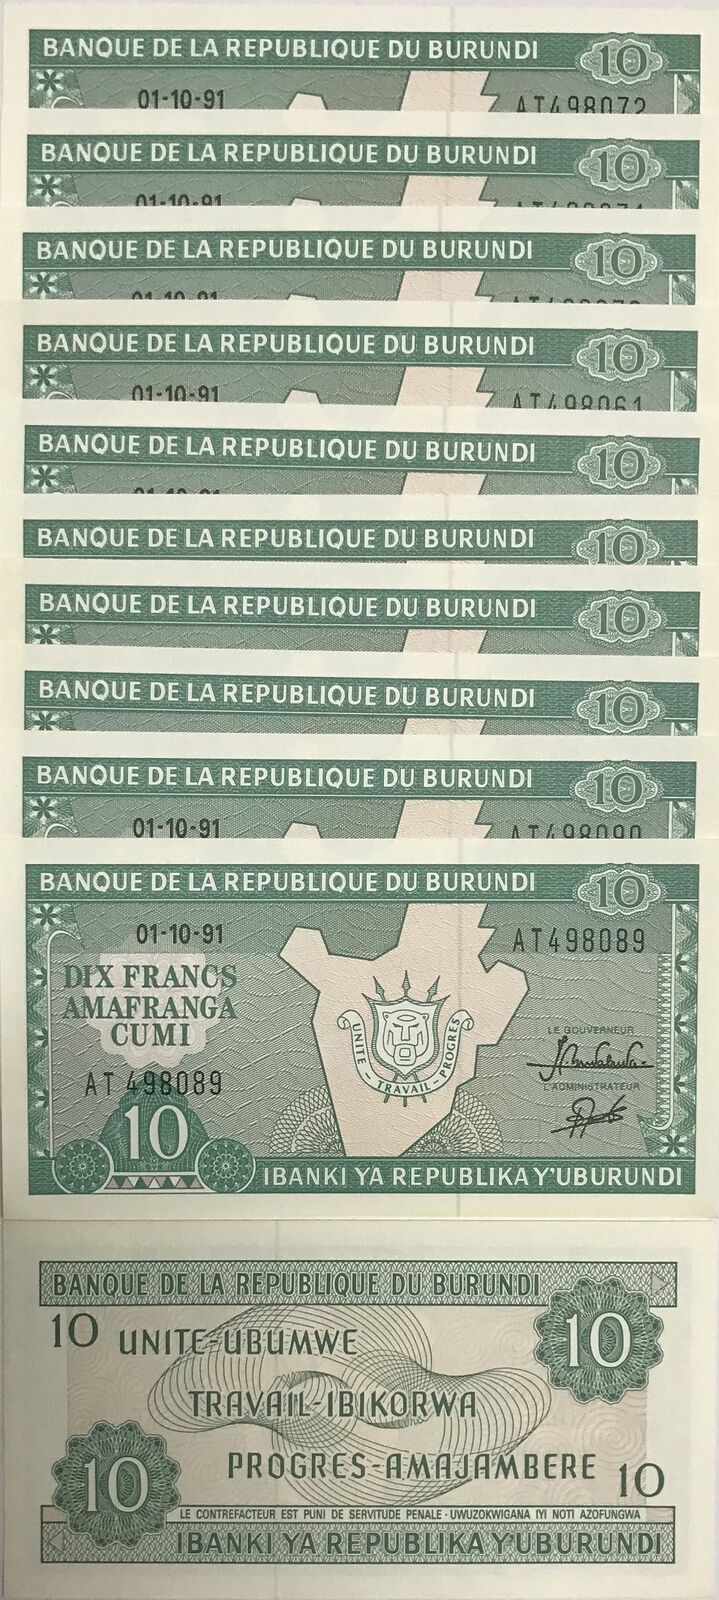 BURUNDI 10 FRANCS 1991 P 33 UNC LOT 10 PCS